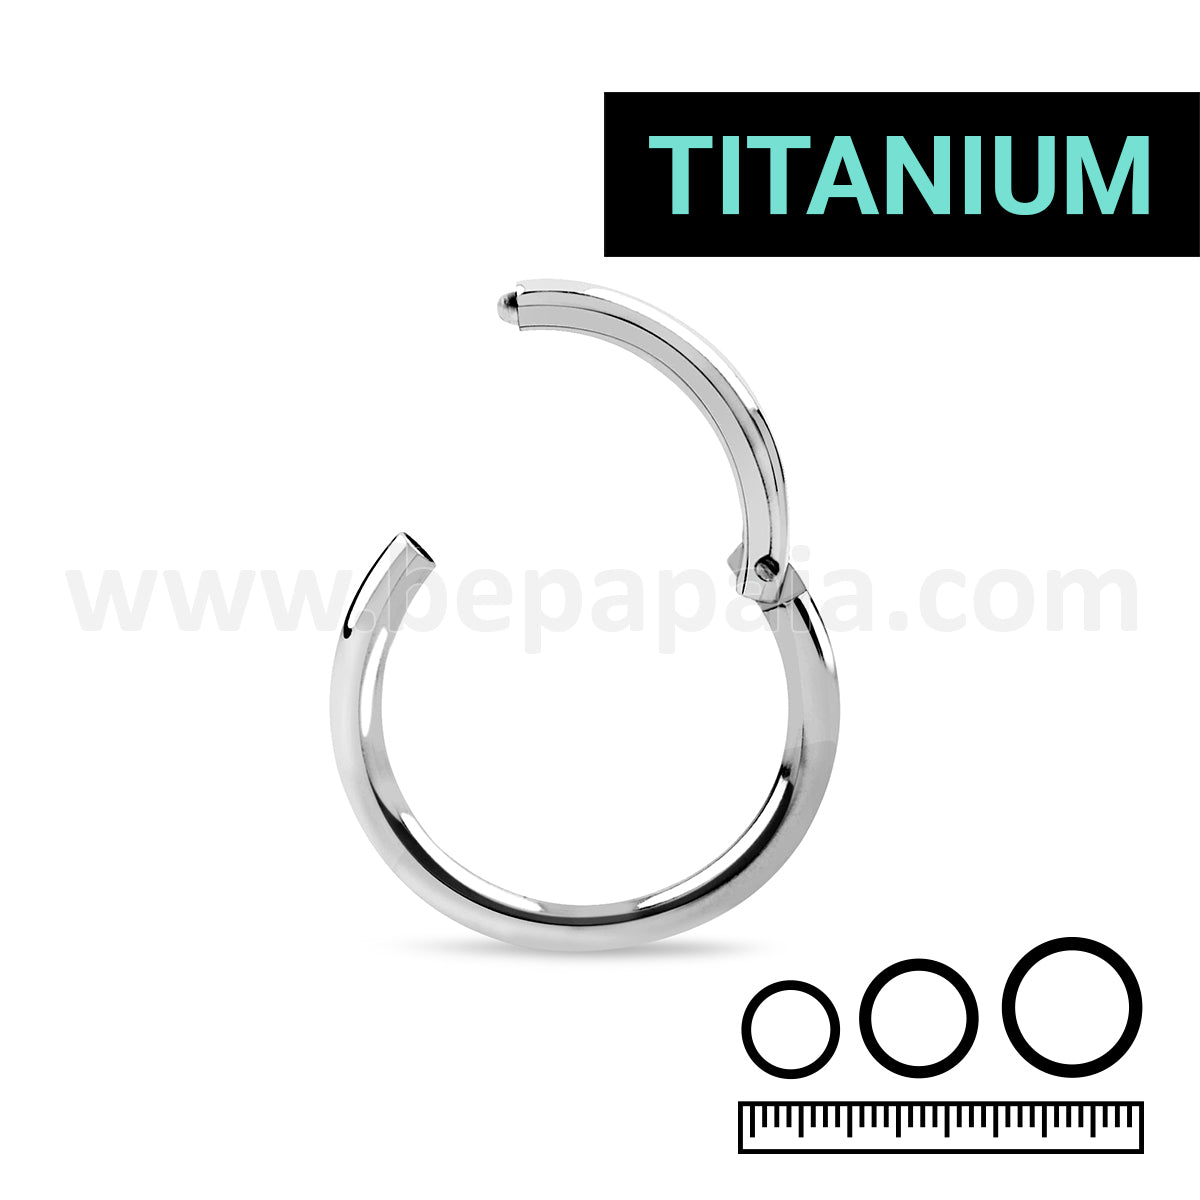 Titanium plain hinged segment ring 1.2mm